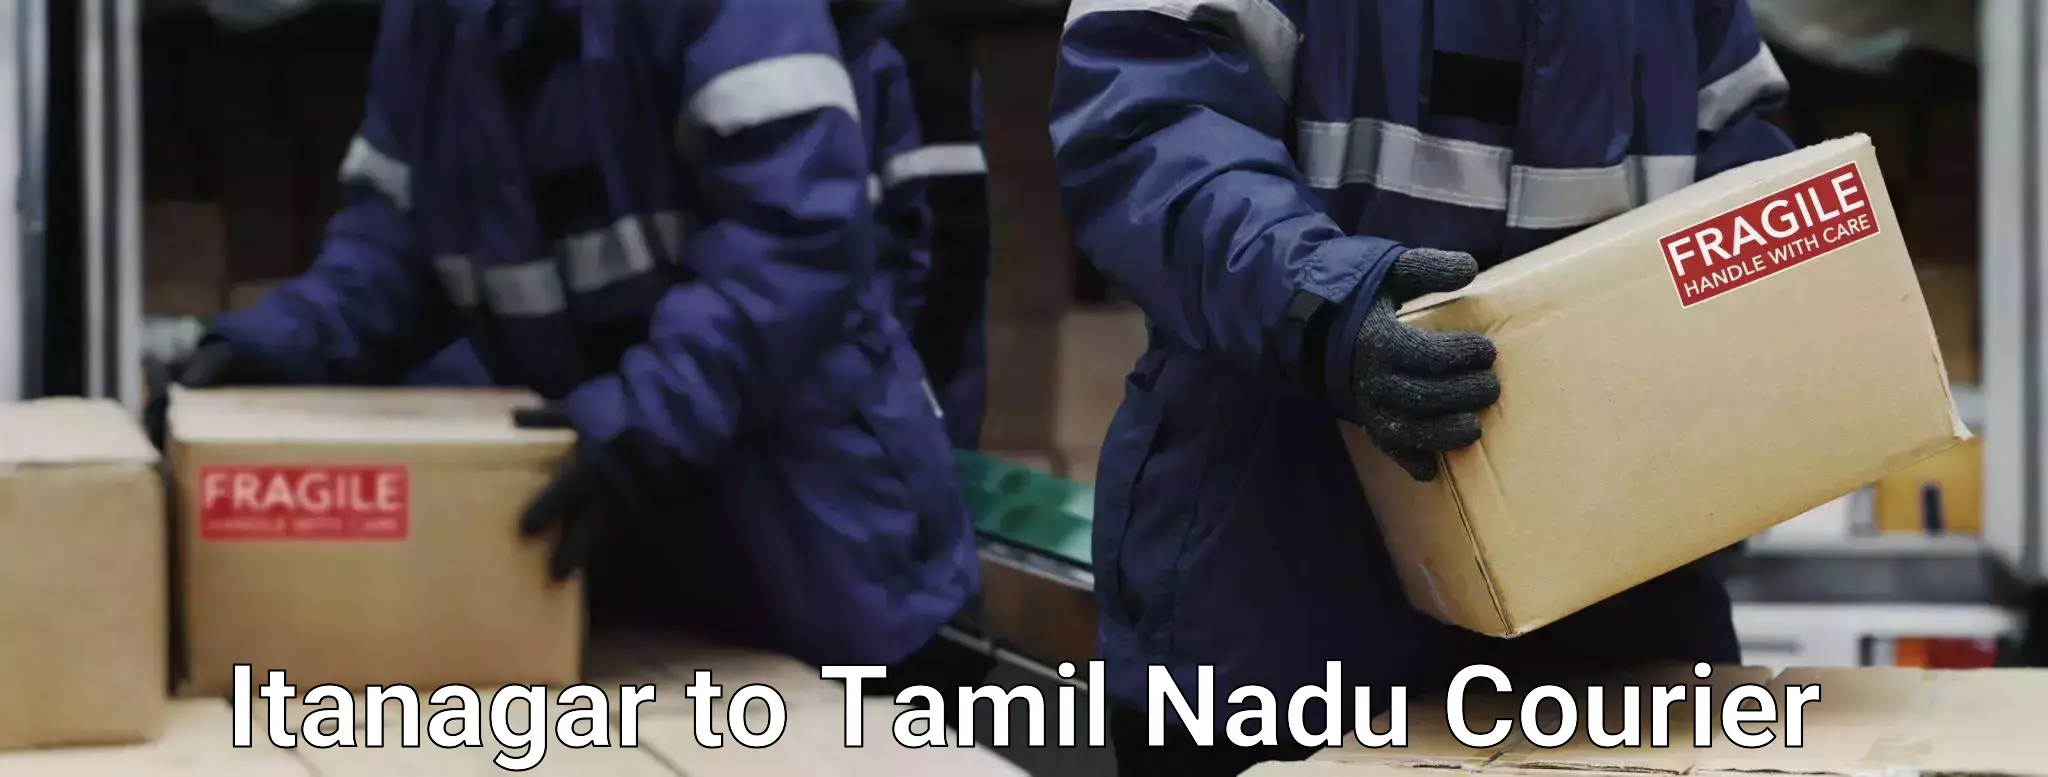 Baggage transport innovation Itanagar to Tamil Nadu